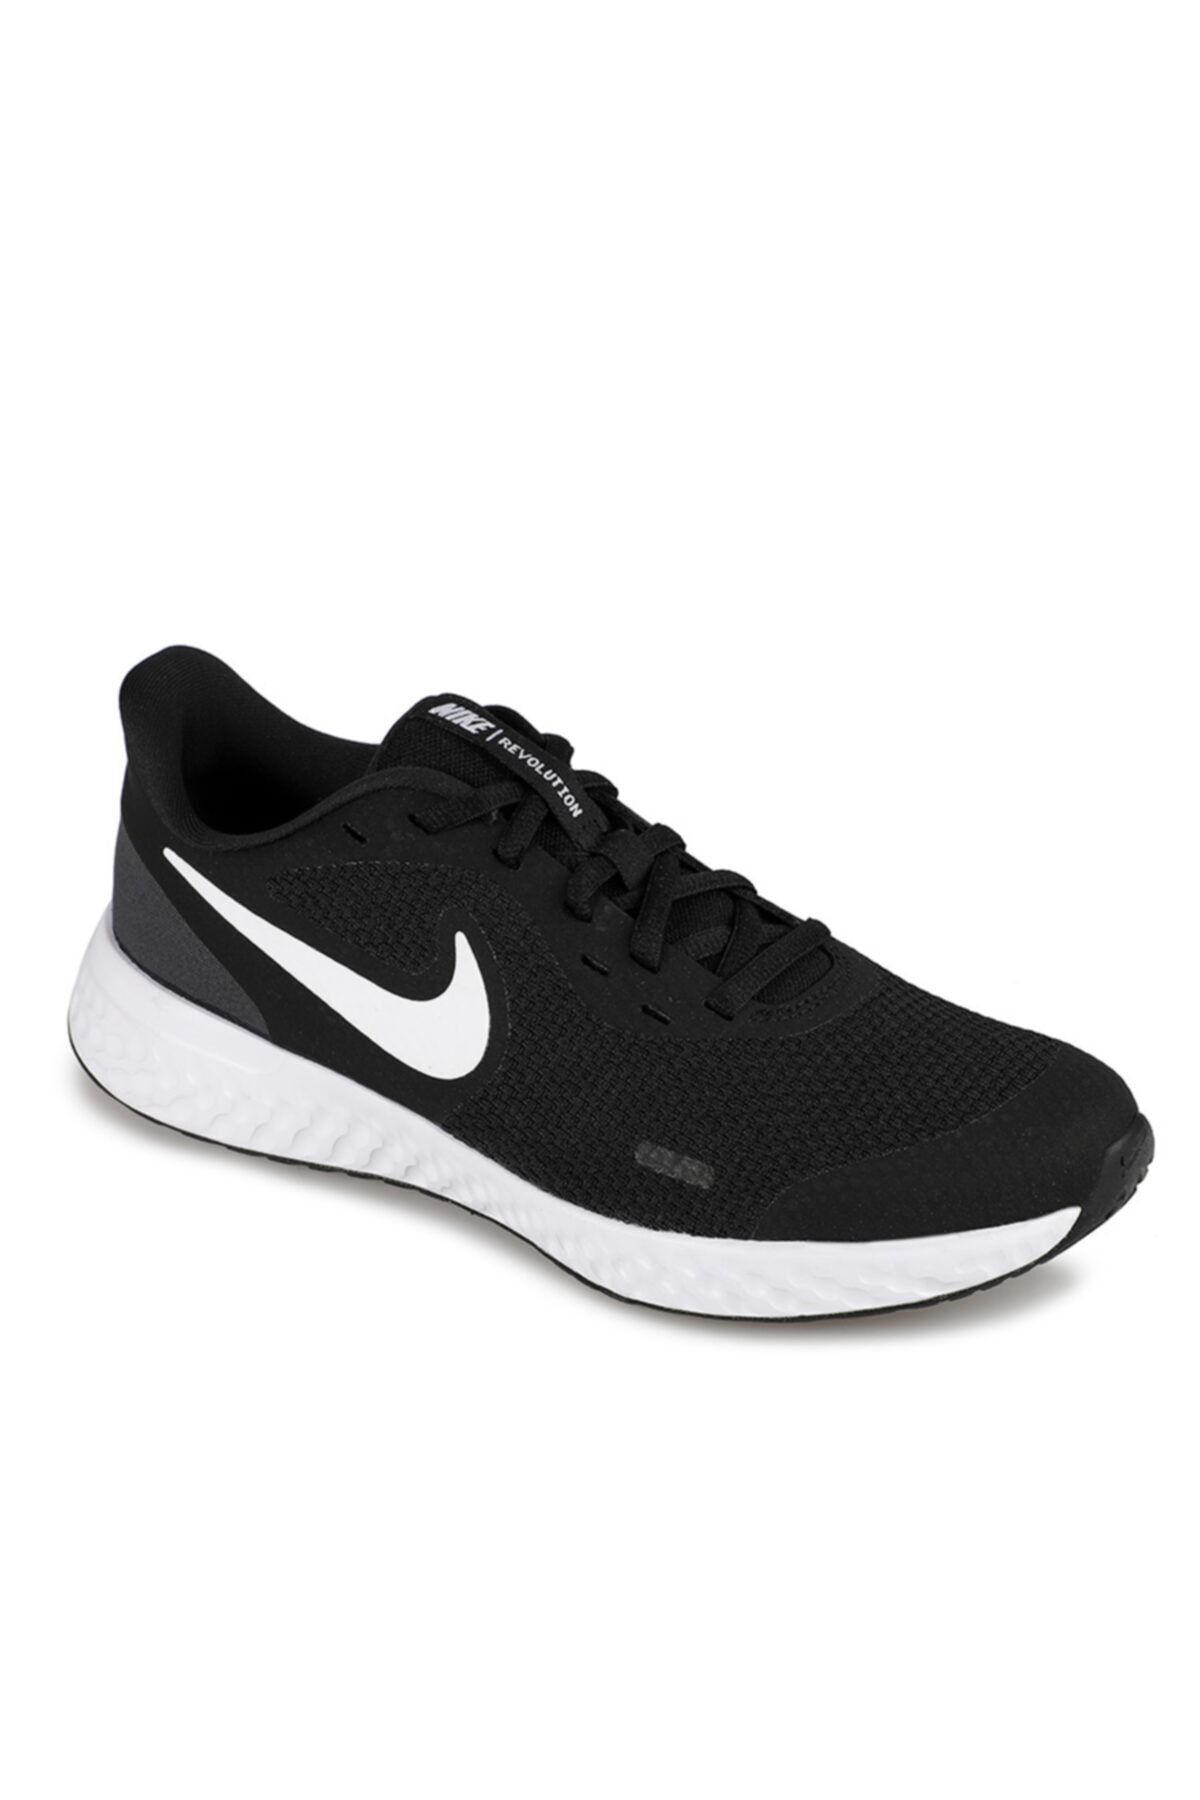 Nike Bq5671-003 Revolution 5 (gs) Kadın Koşu Yürüyüş Ayakkabısı Siyah